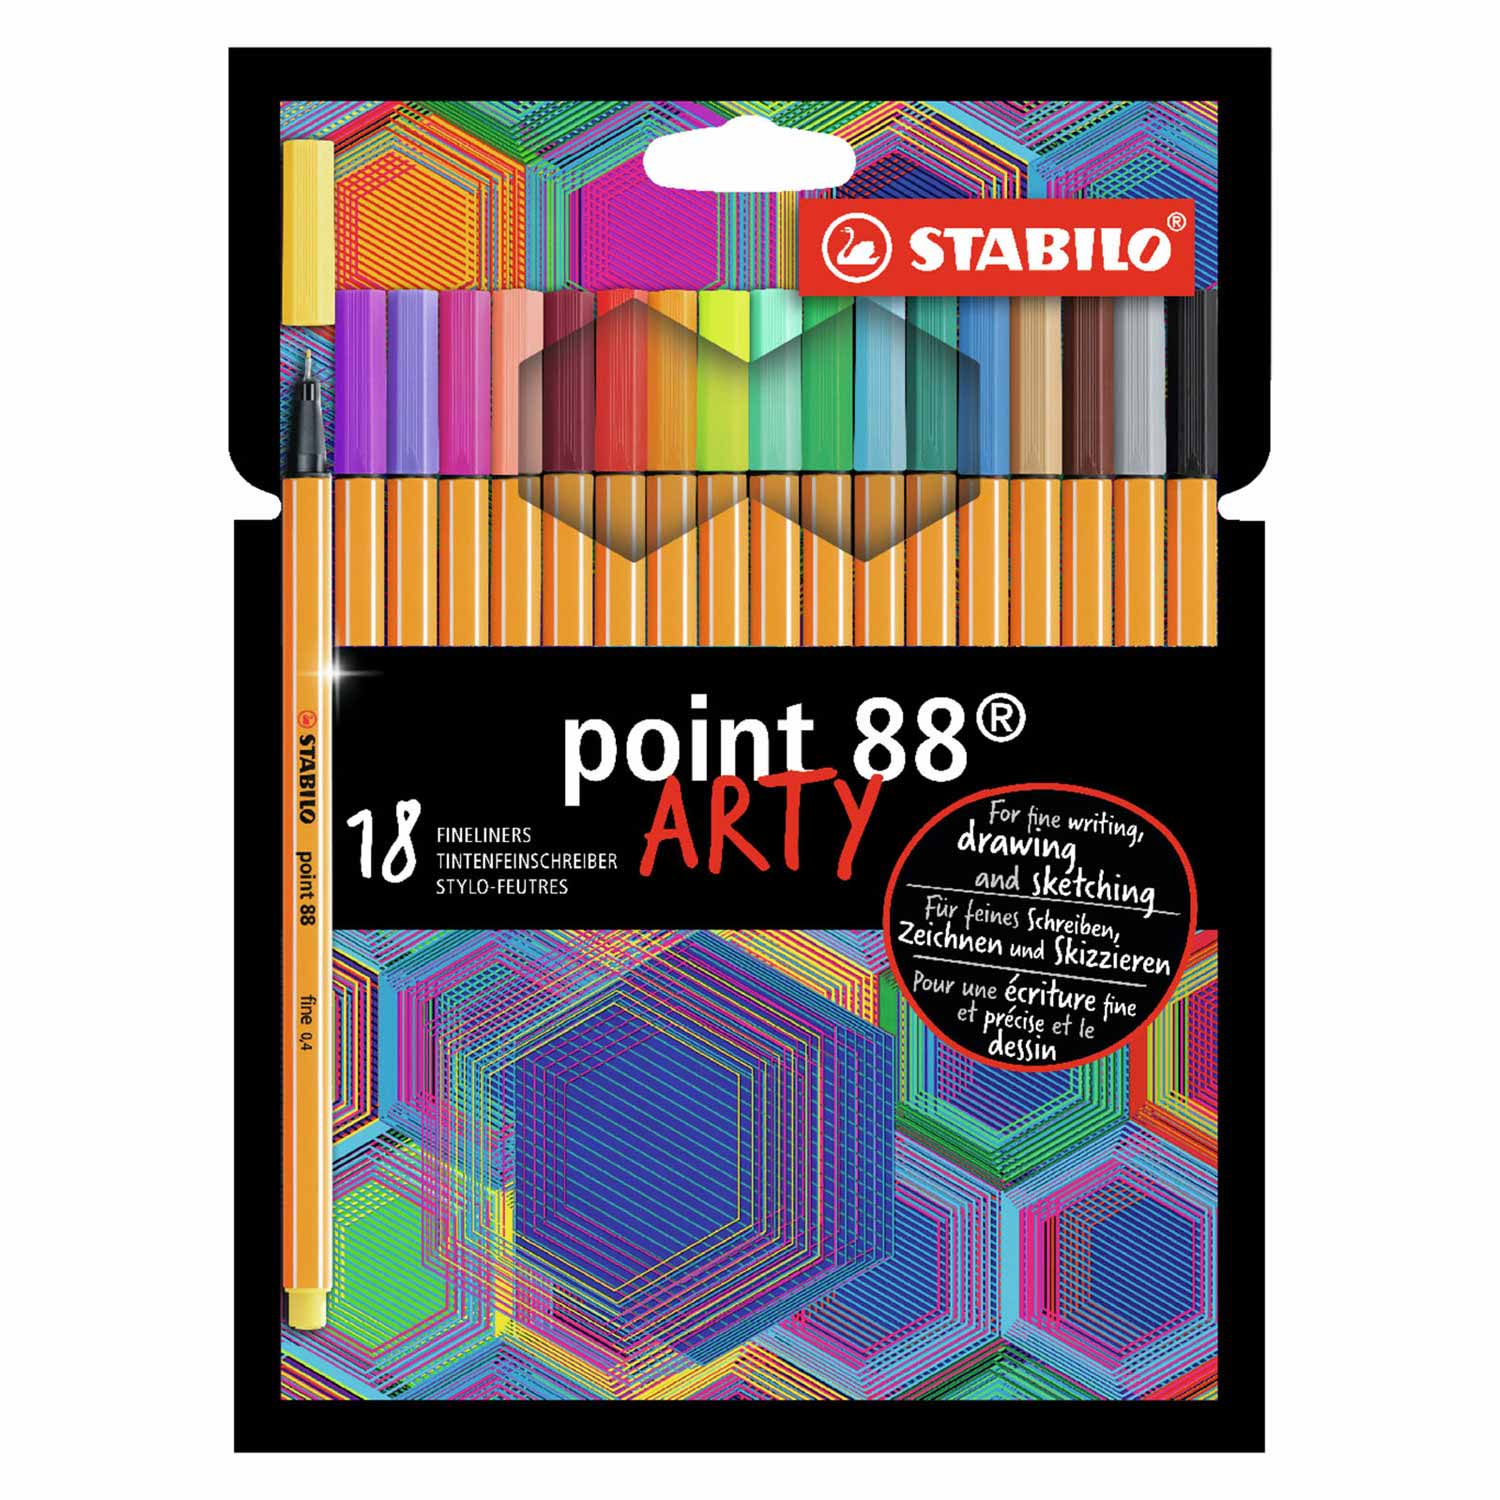 STABILO point 88 - Fineliner - ARTY - Set mit 18 Teilen